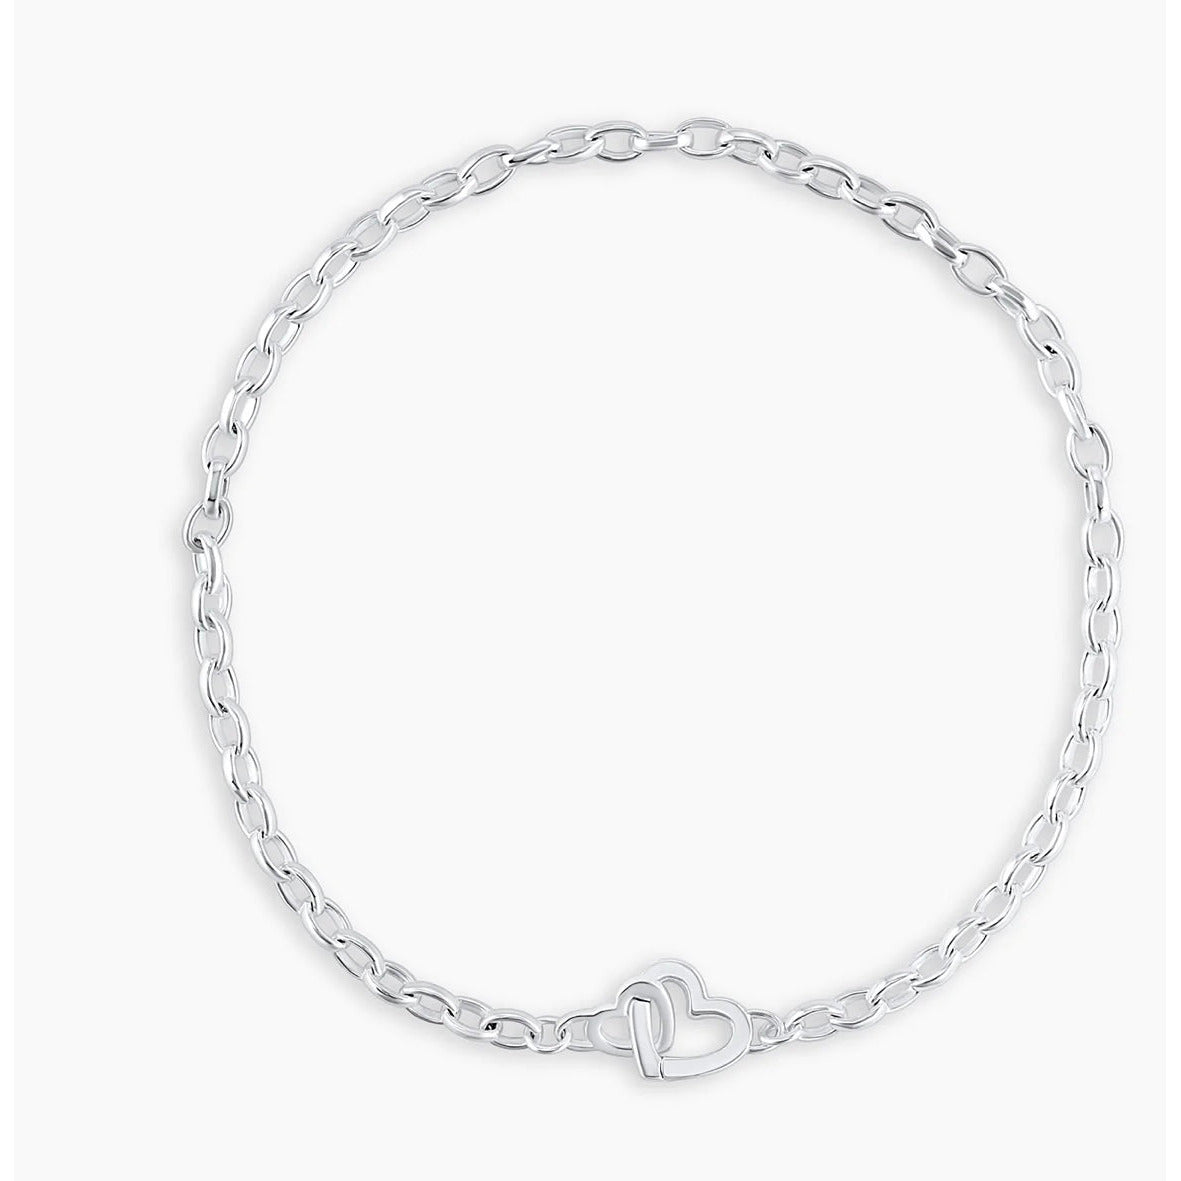 Gorjana Parker Mini Necklace One Size / Silver